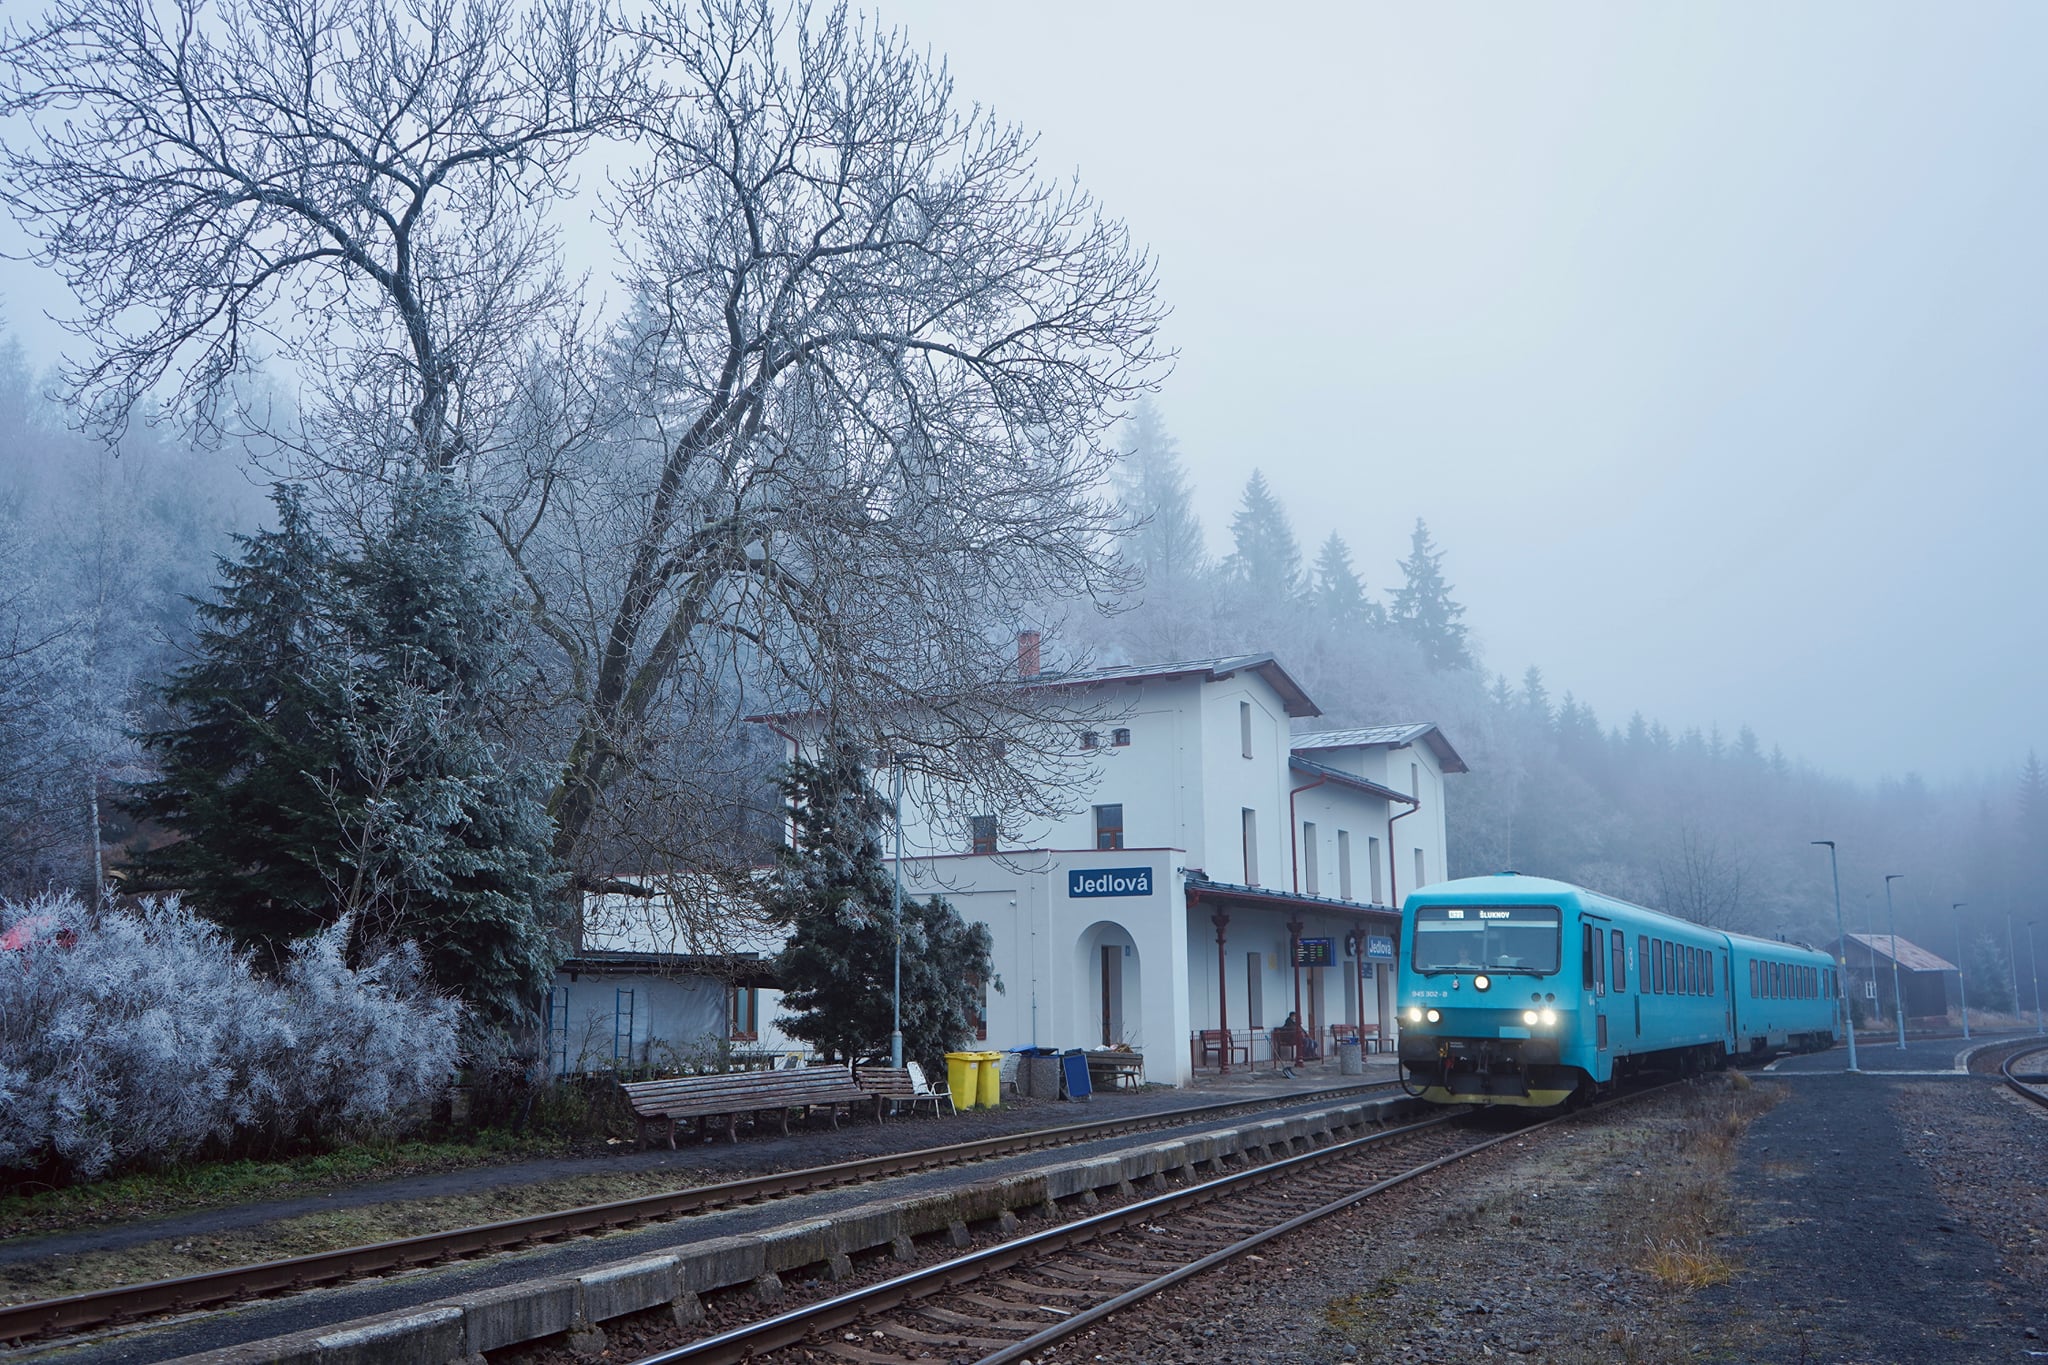 Rychlík společnosti Arriva vlaky ve stanici Jedlová. Foto: Správa železnic